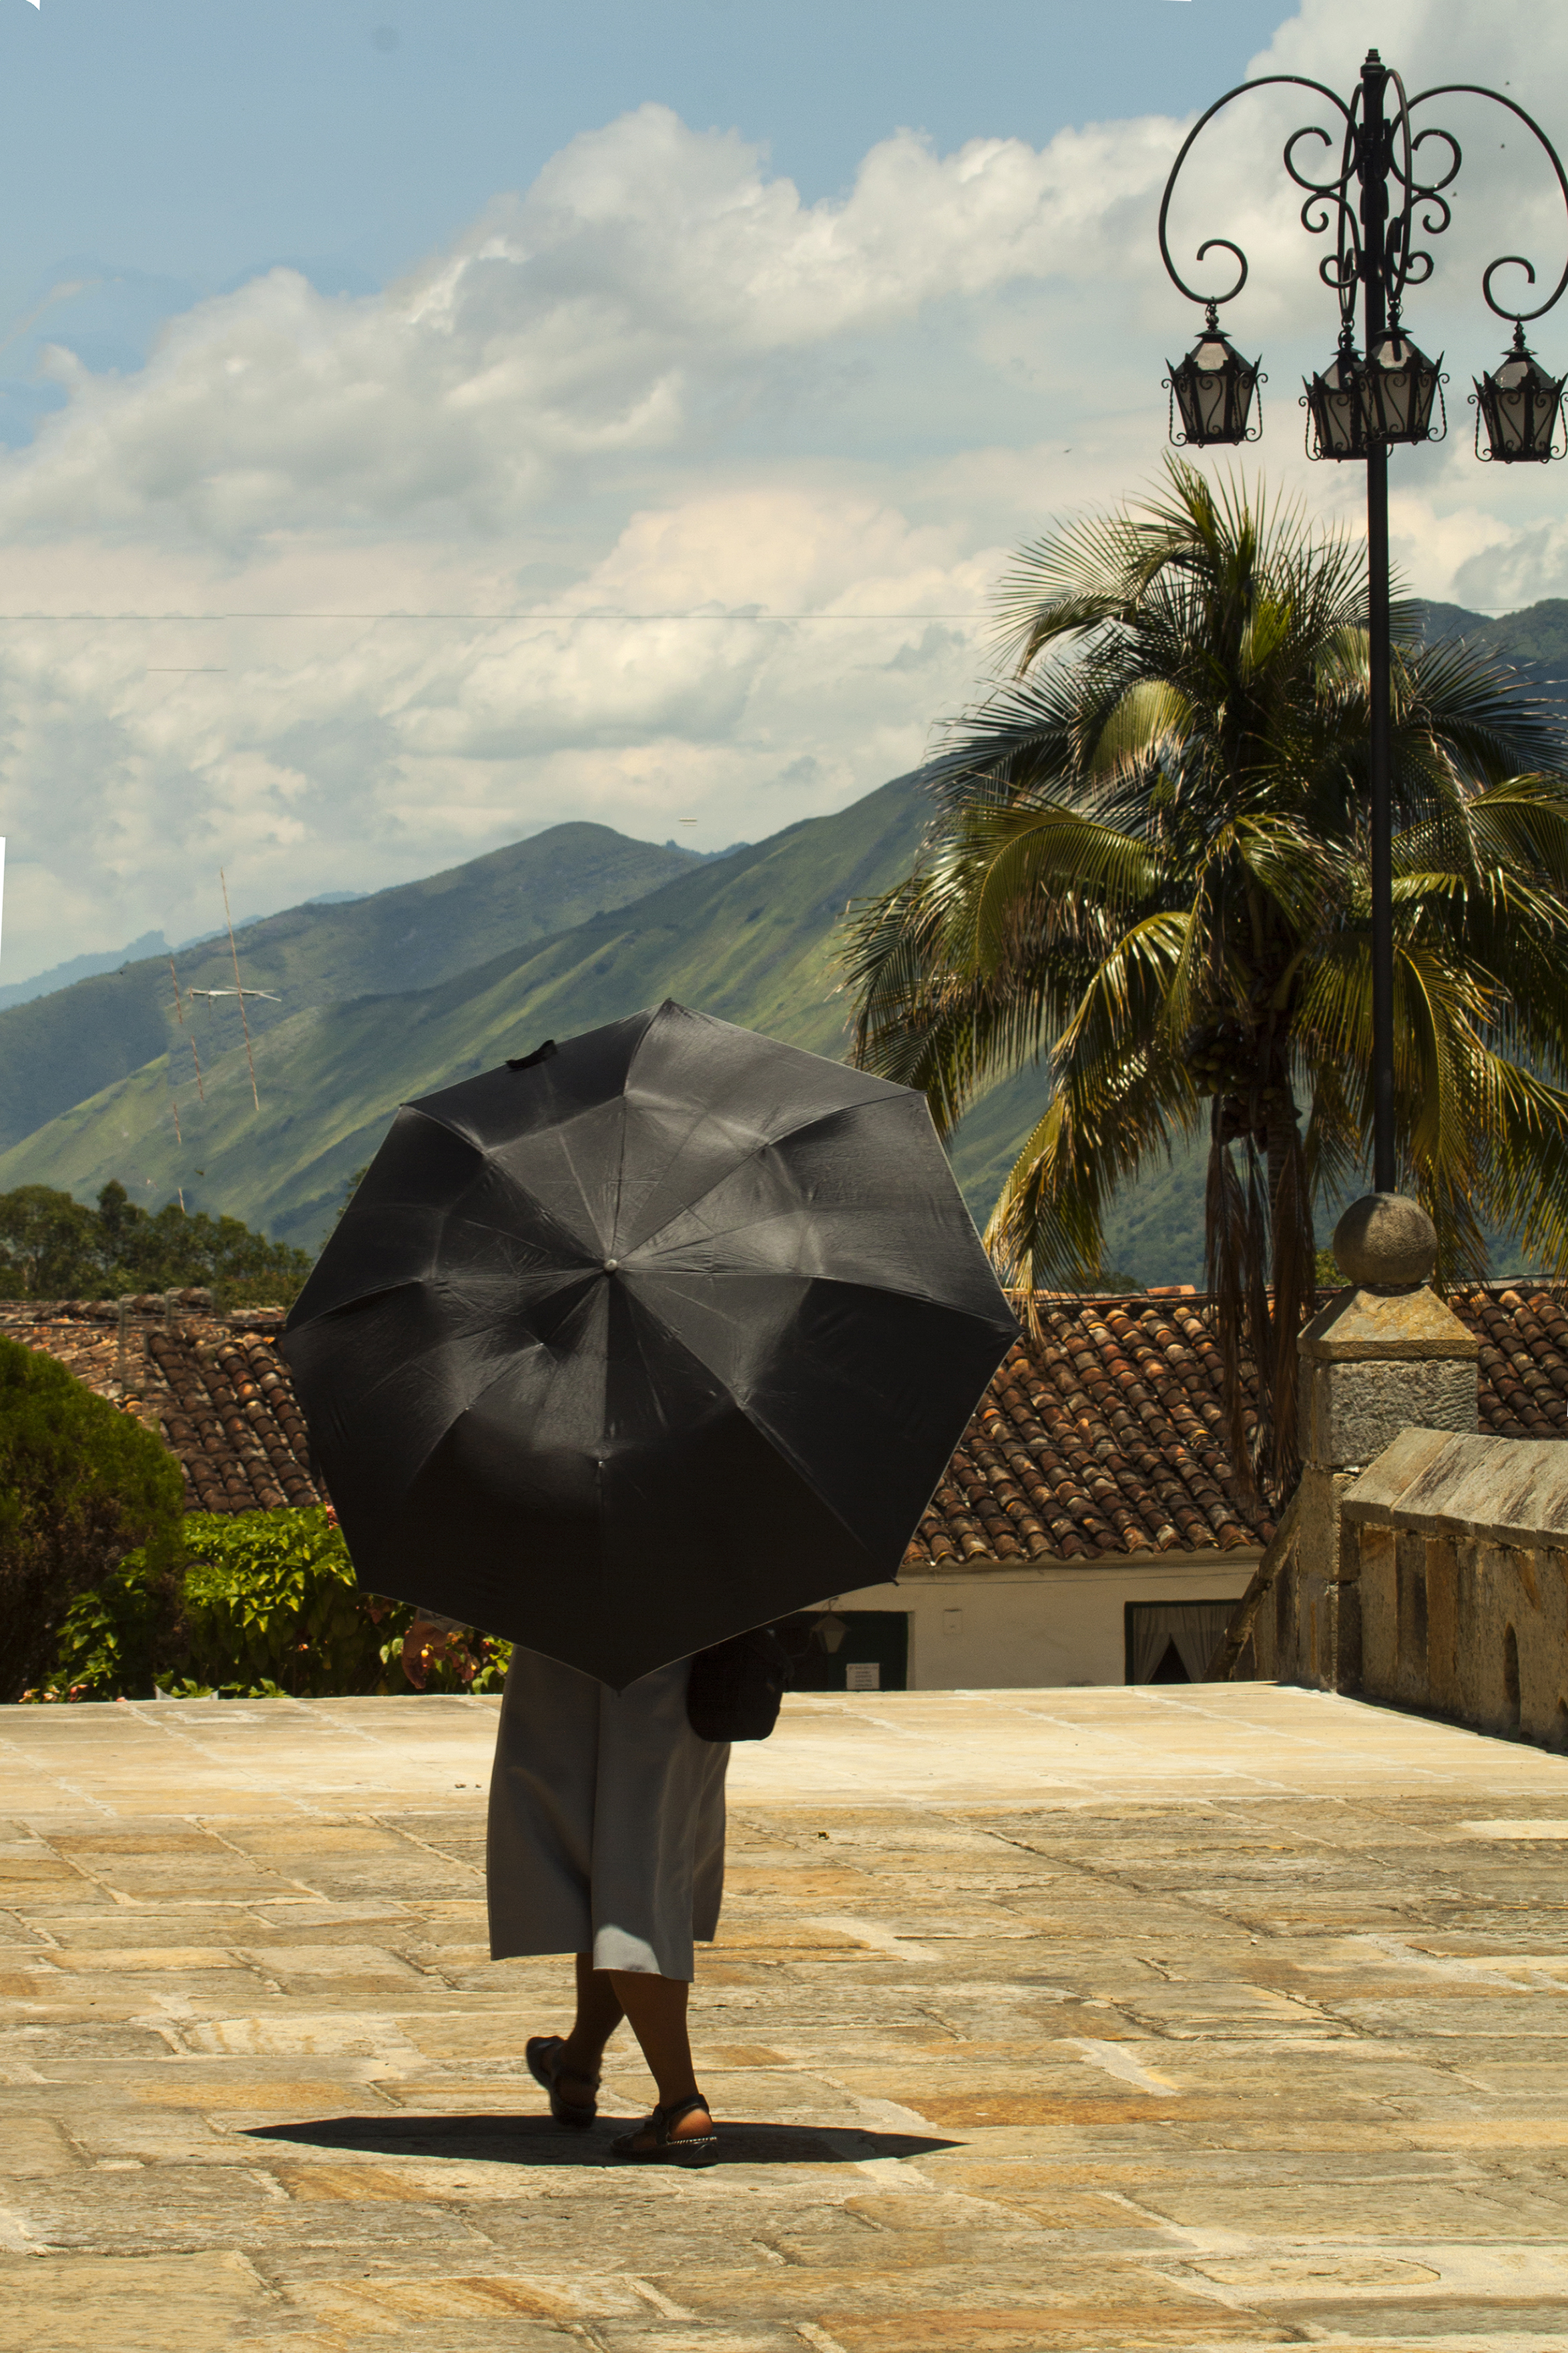 El parasol Guadalupe, Santander, Colombia